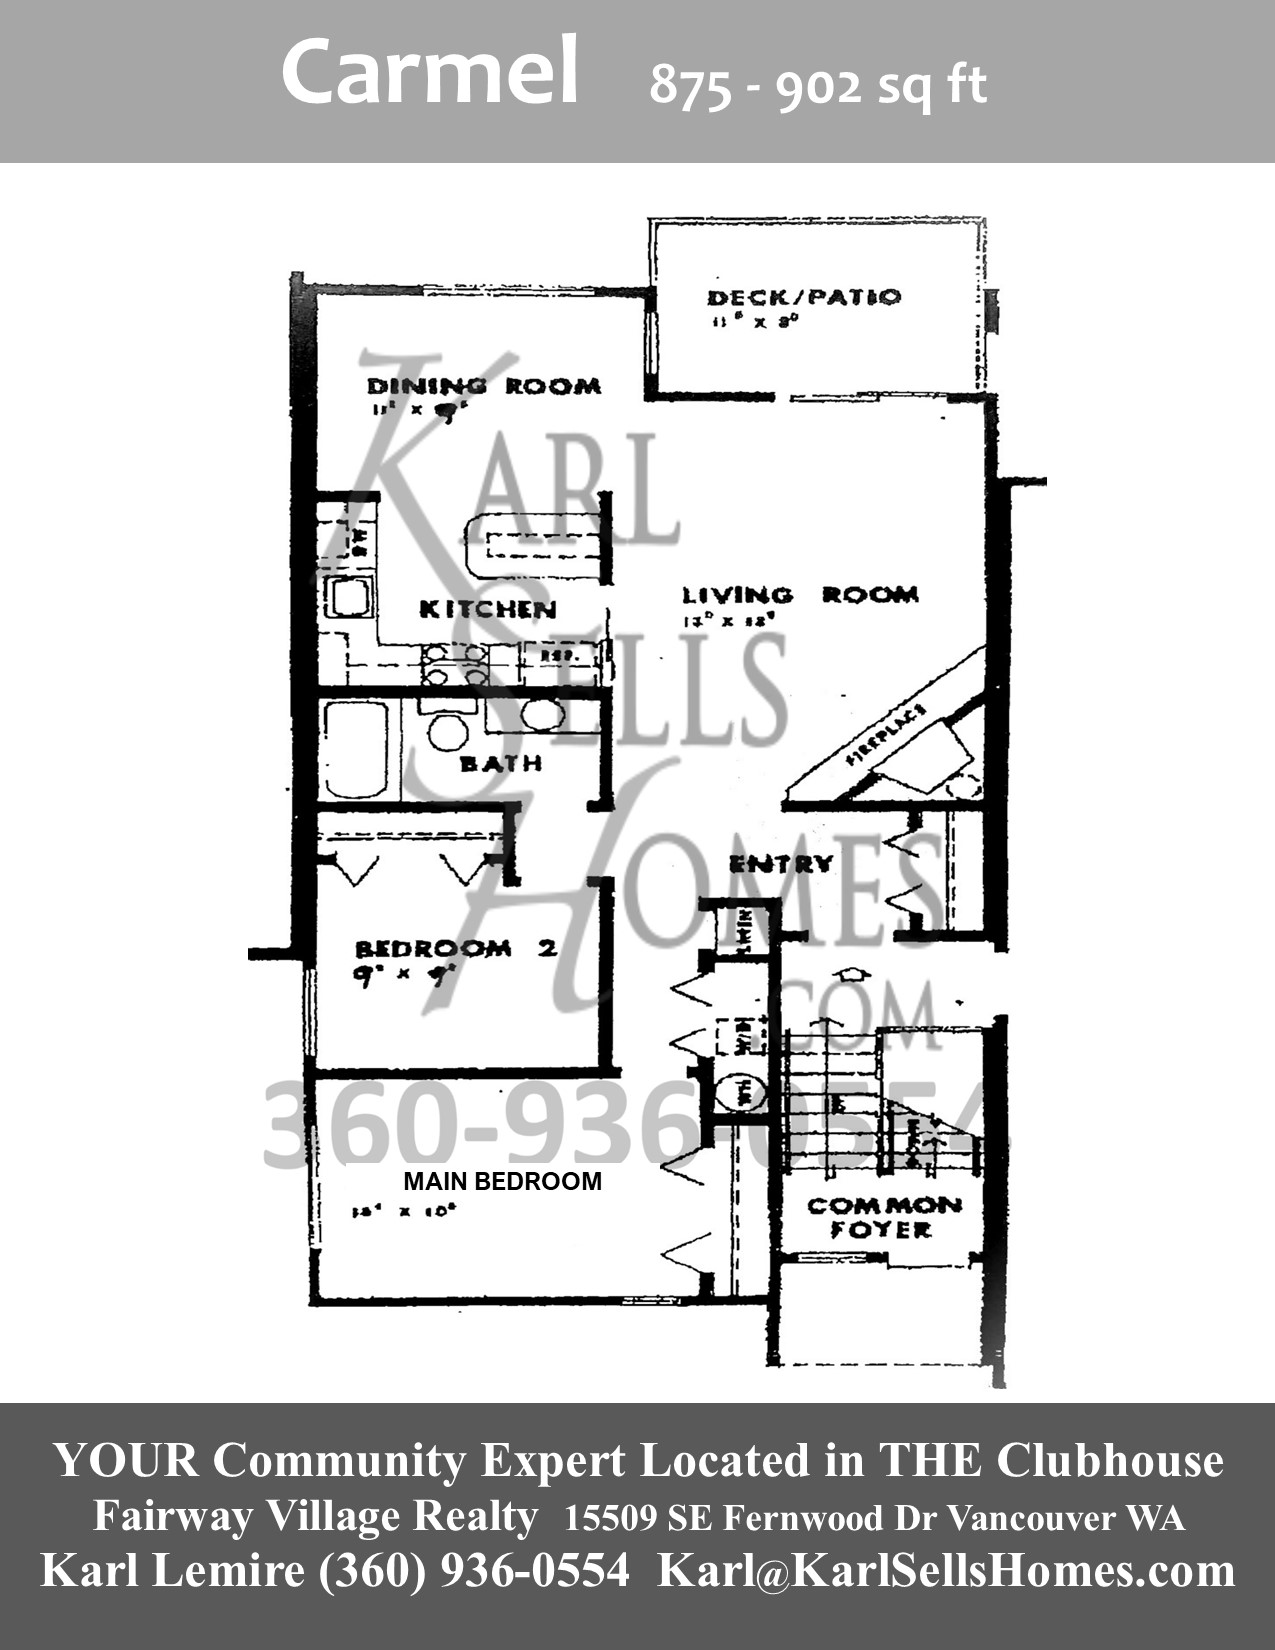 Fairway View Carmel Condo Floor Plan at Fairway VIllage